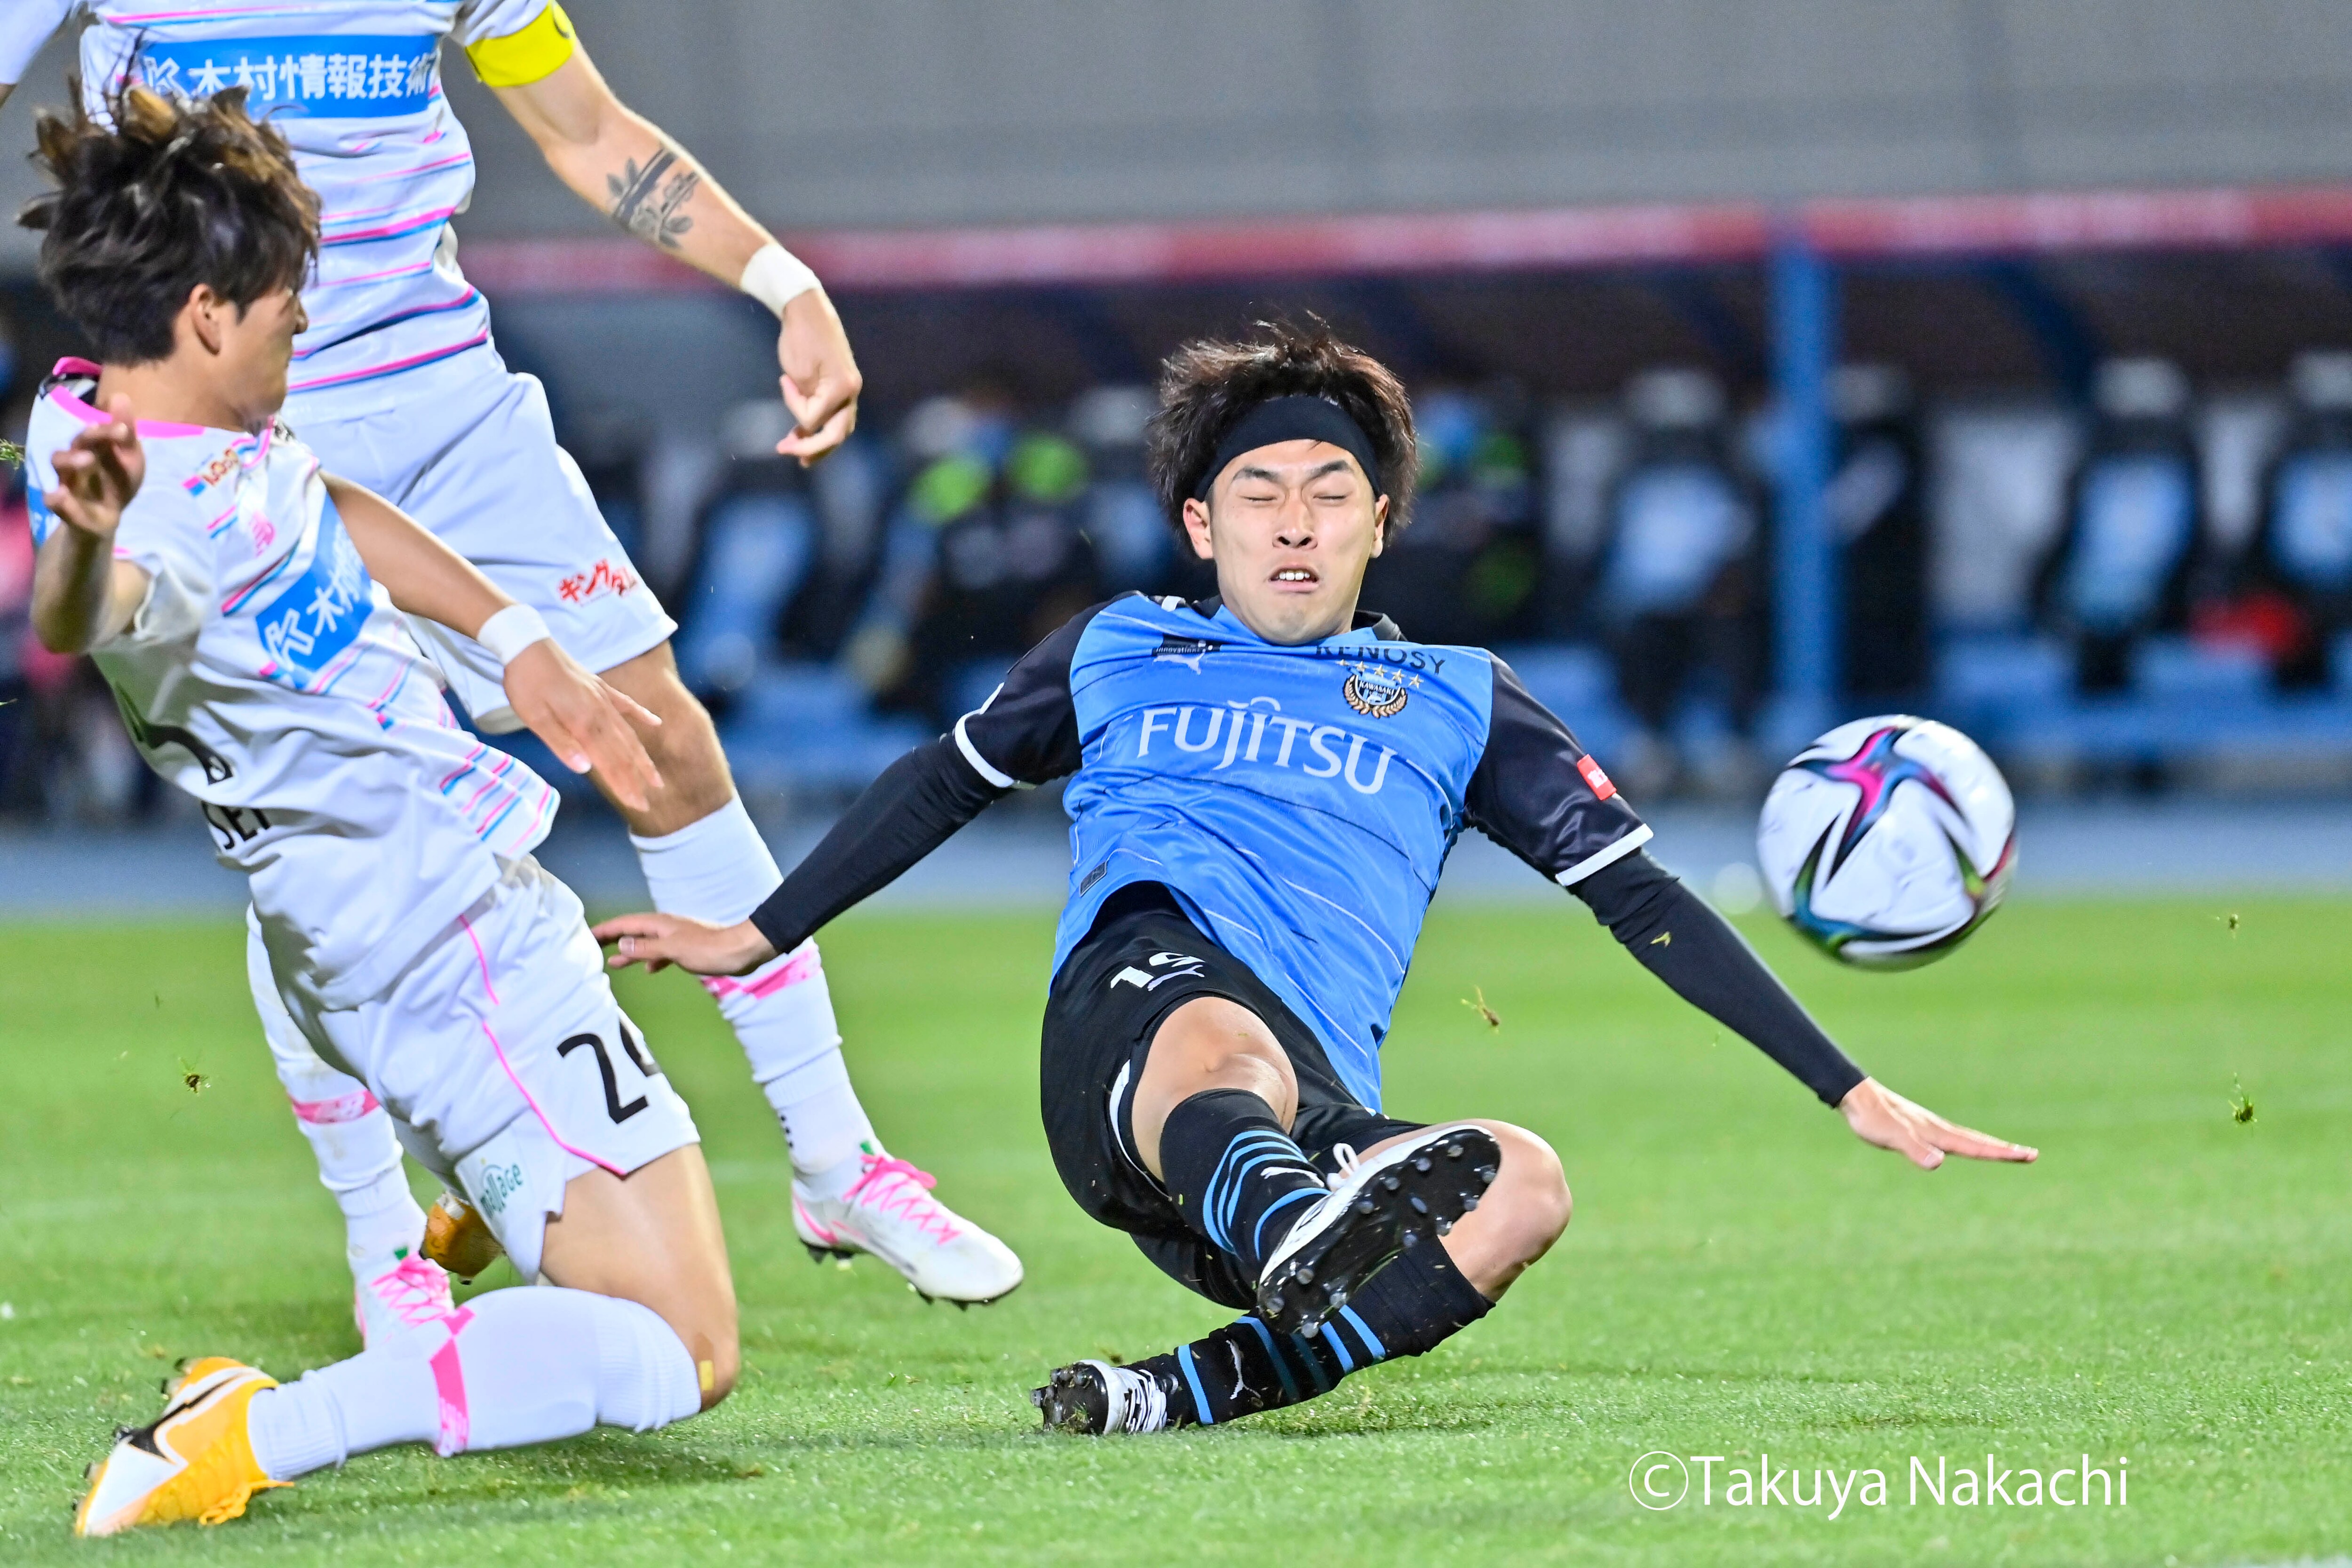 川崎300勝達成 1 決勝弾 遠野大弥に 日本代表の先輩 がかけた 試合後の言葉 サッカー批評web